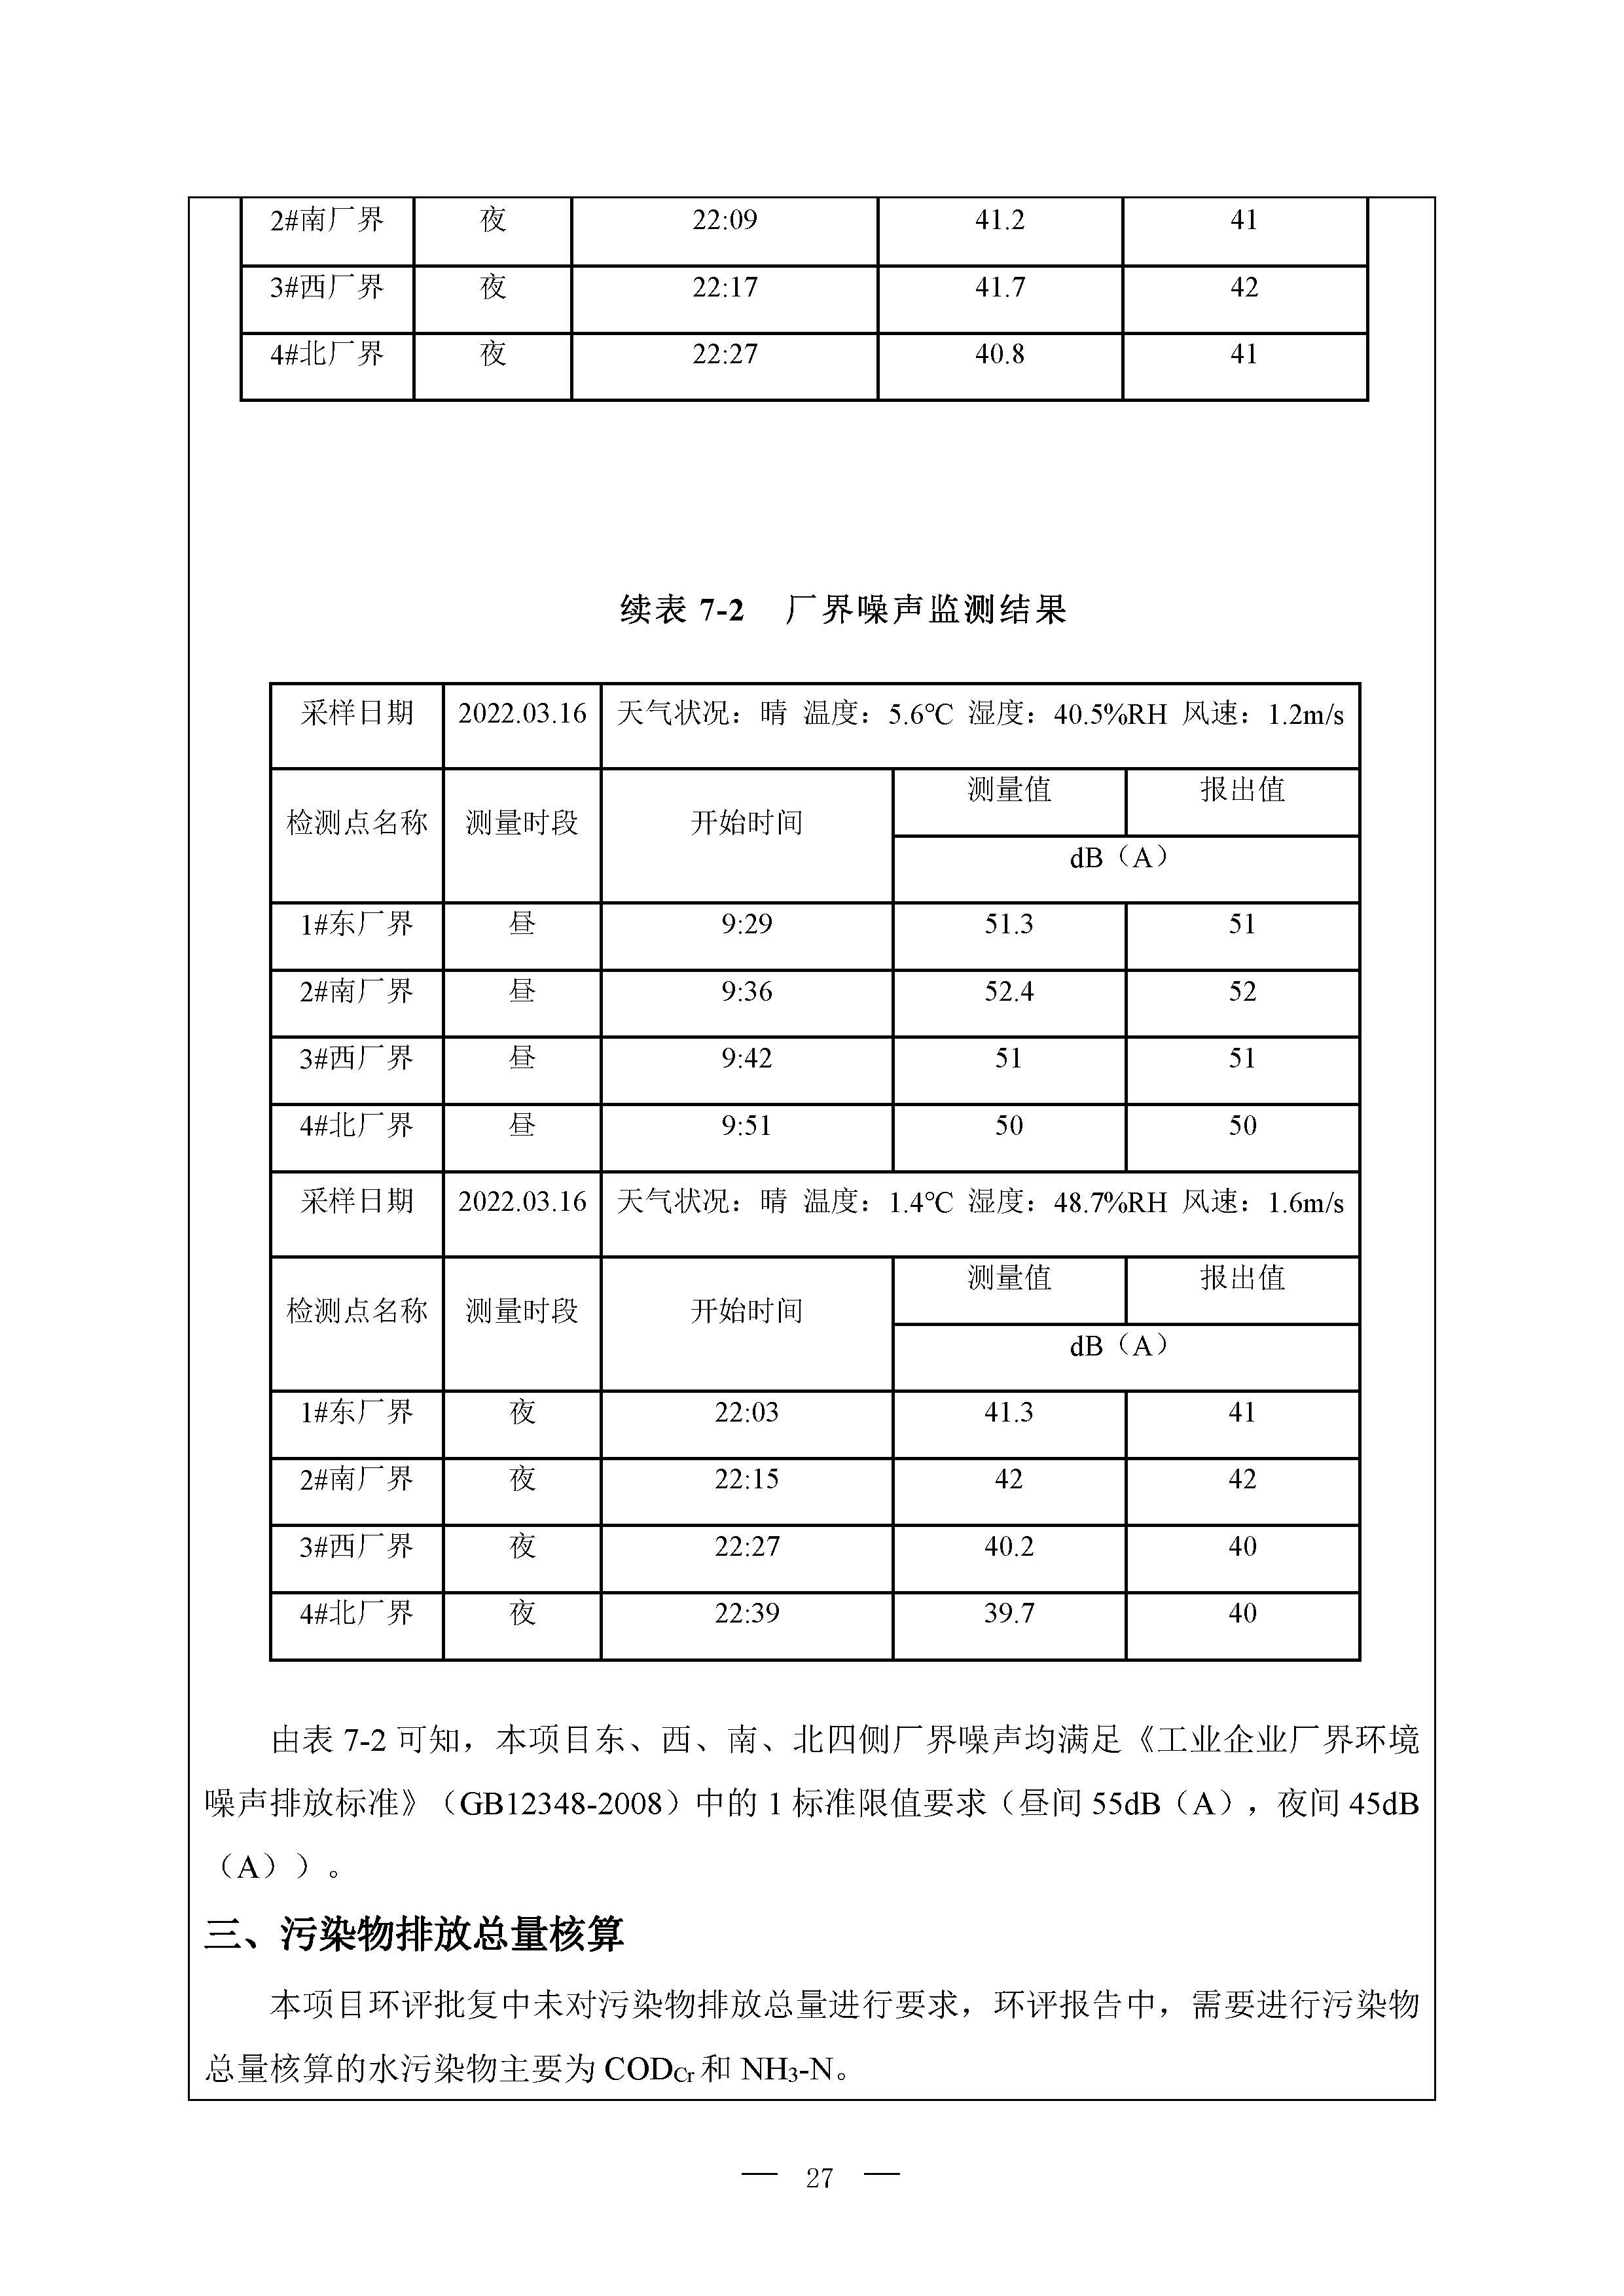 北京博瑞莱智能科技集团有限公司项目竣工环境保护验收监测报告全本公示(图31)